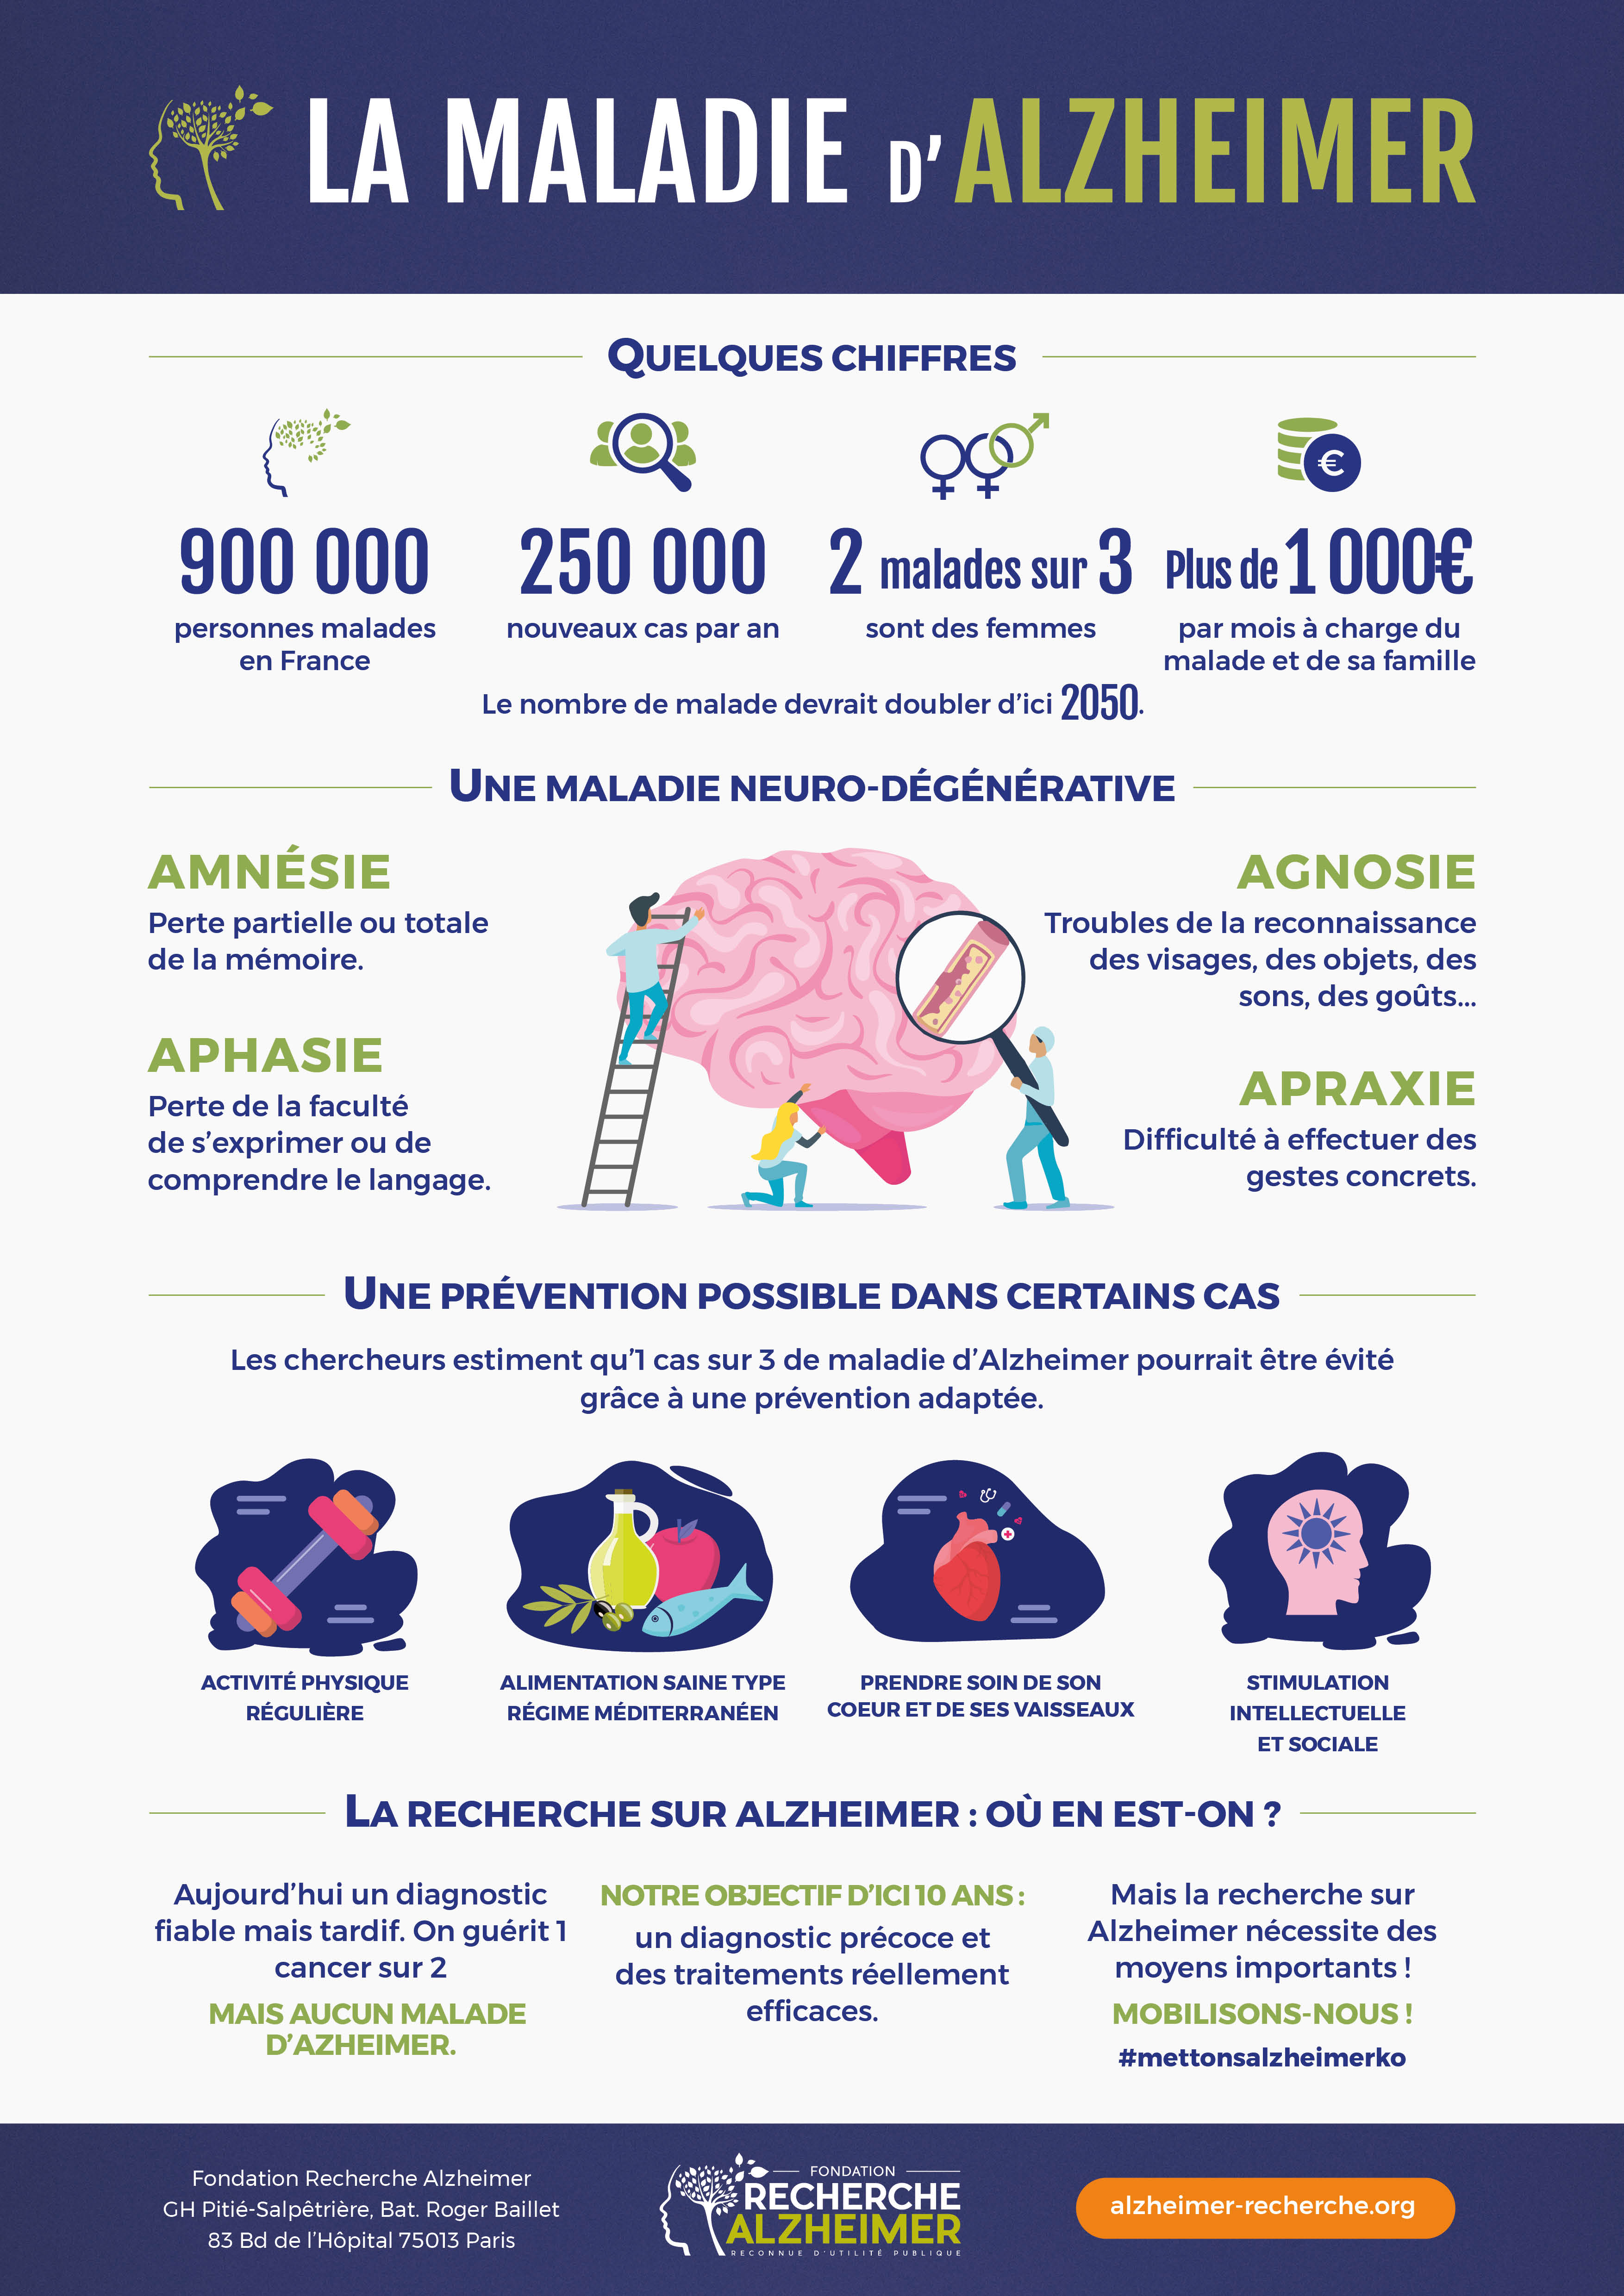 Infographie principaux chiffres et faits concernant la maladie d'Alzheimer